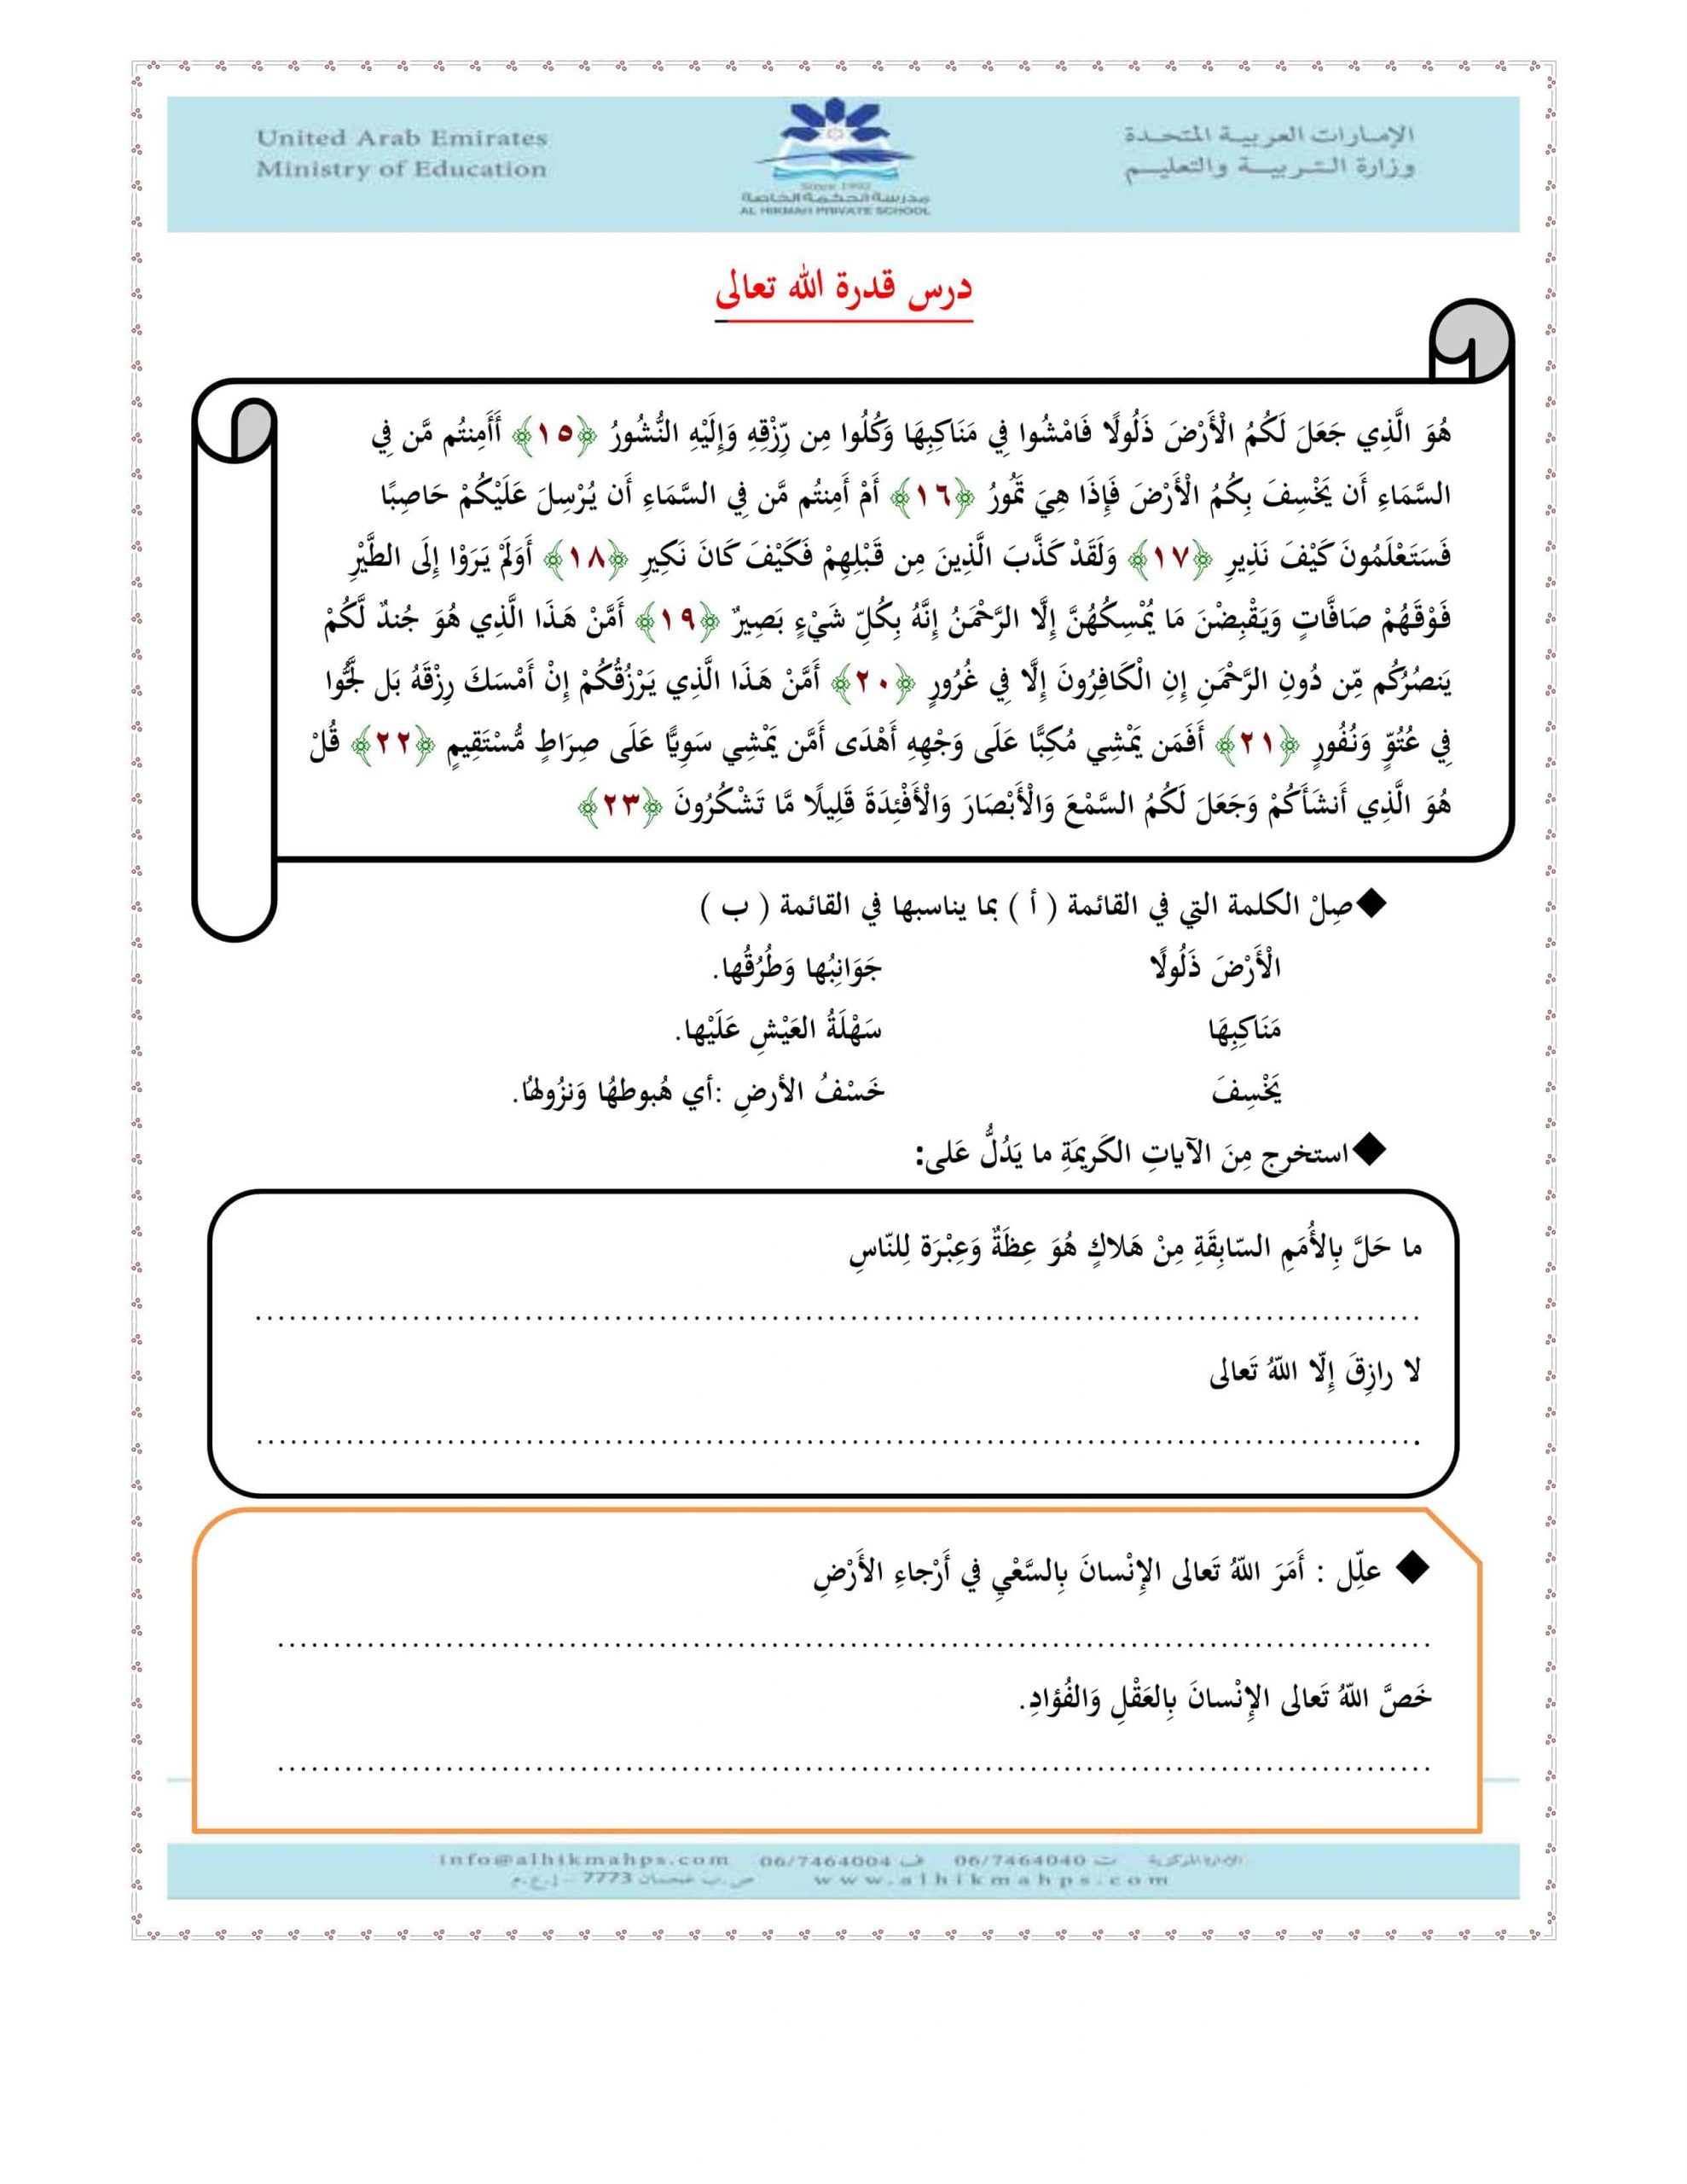 أوراق عمل مراجعة عامة الصف السادس مادة التربية الإسلامية